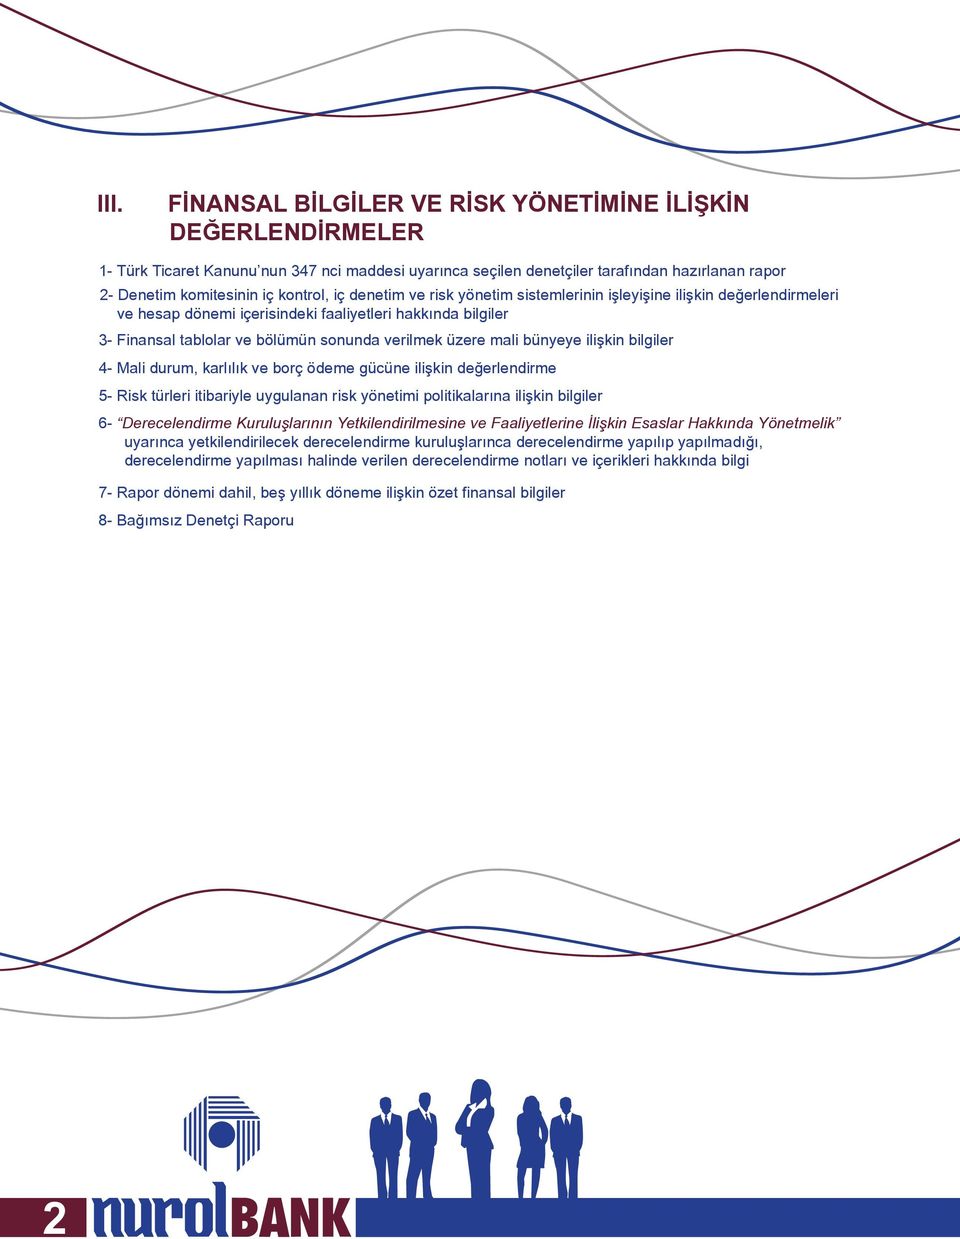 üzere mali bünyeye ilişkin bilgiler 4- Mali durum, karlılık ve borç ödeme gücüne ilişkin değerlendirme 5- Risk türleri itibariyle uygulanan risk yönetimi politikalarına ilişkin bilgiler 6-